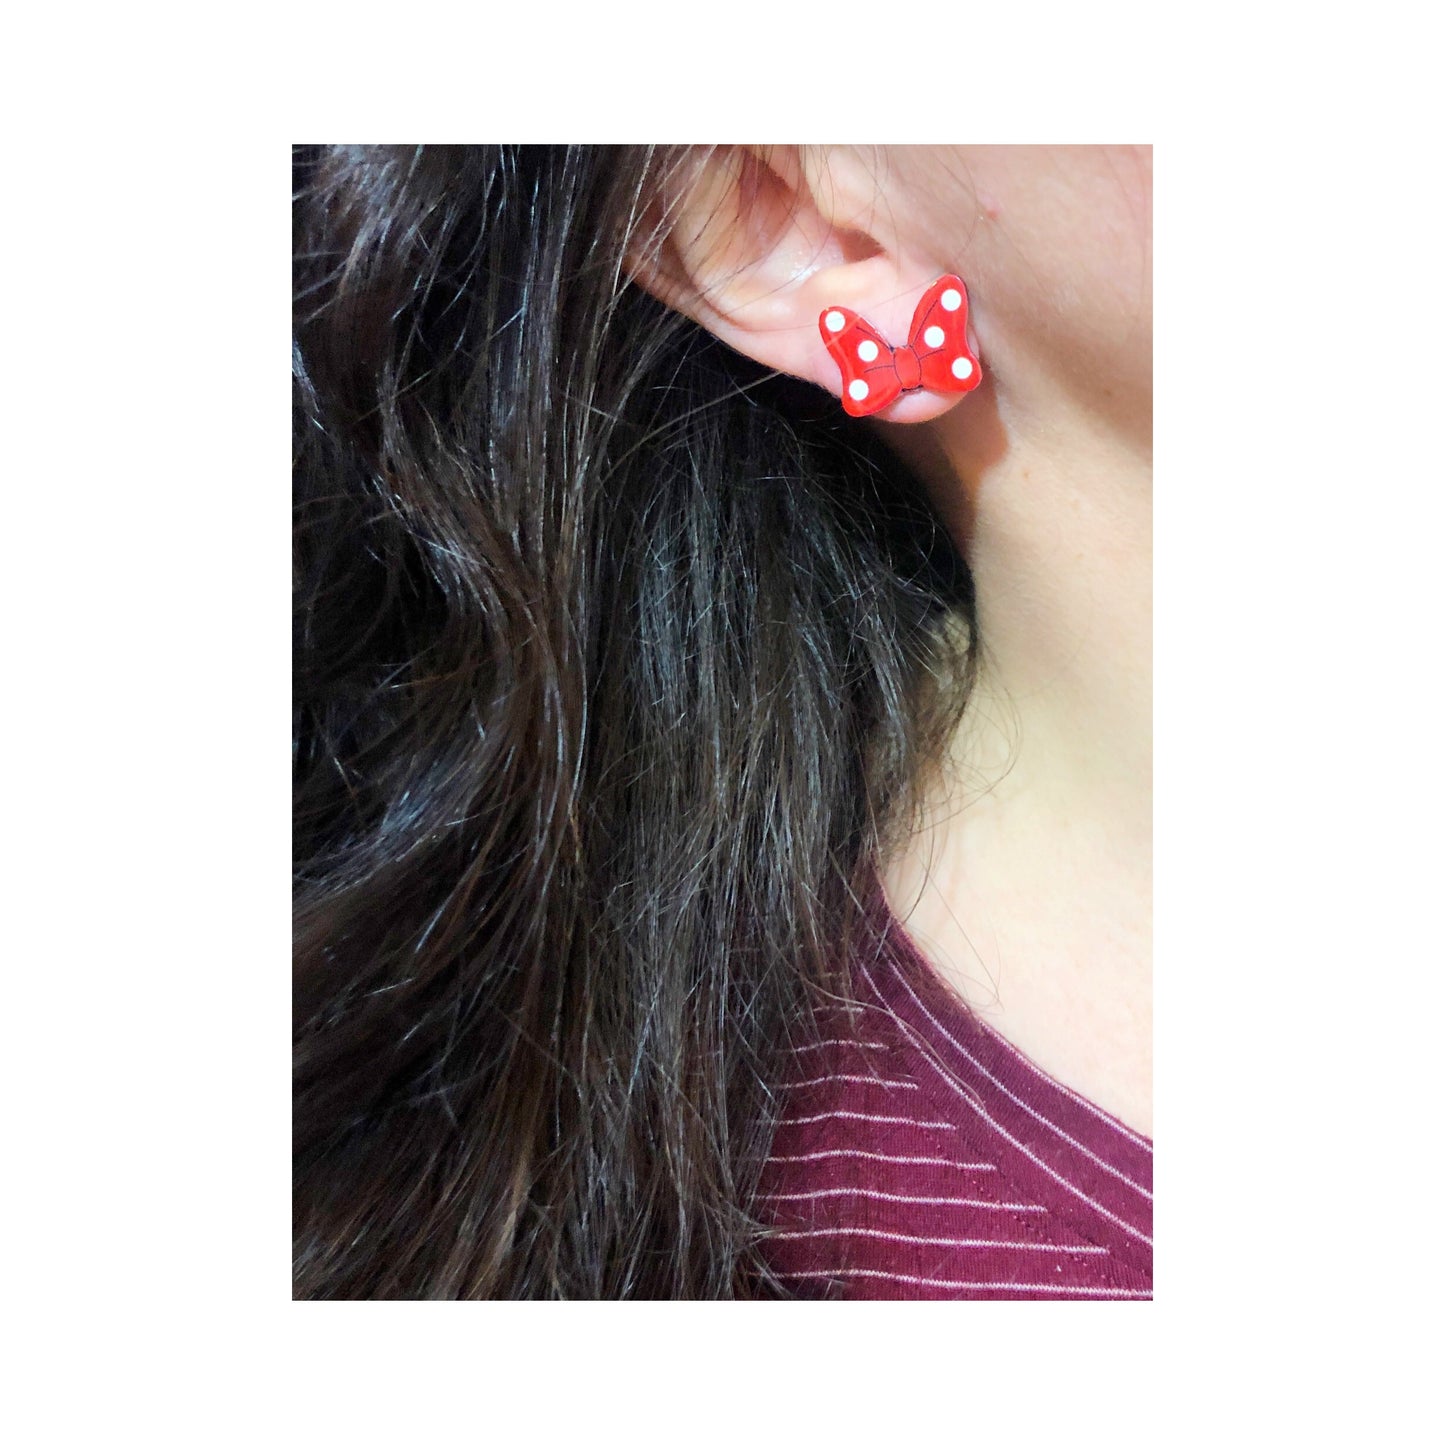 Matte Polka Dot Bow Red Post Earrings